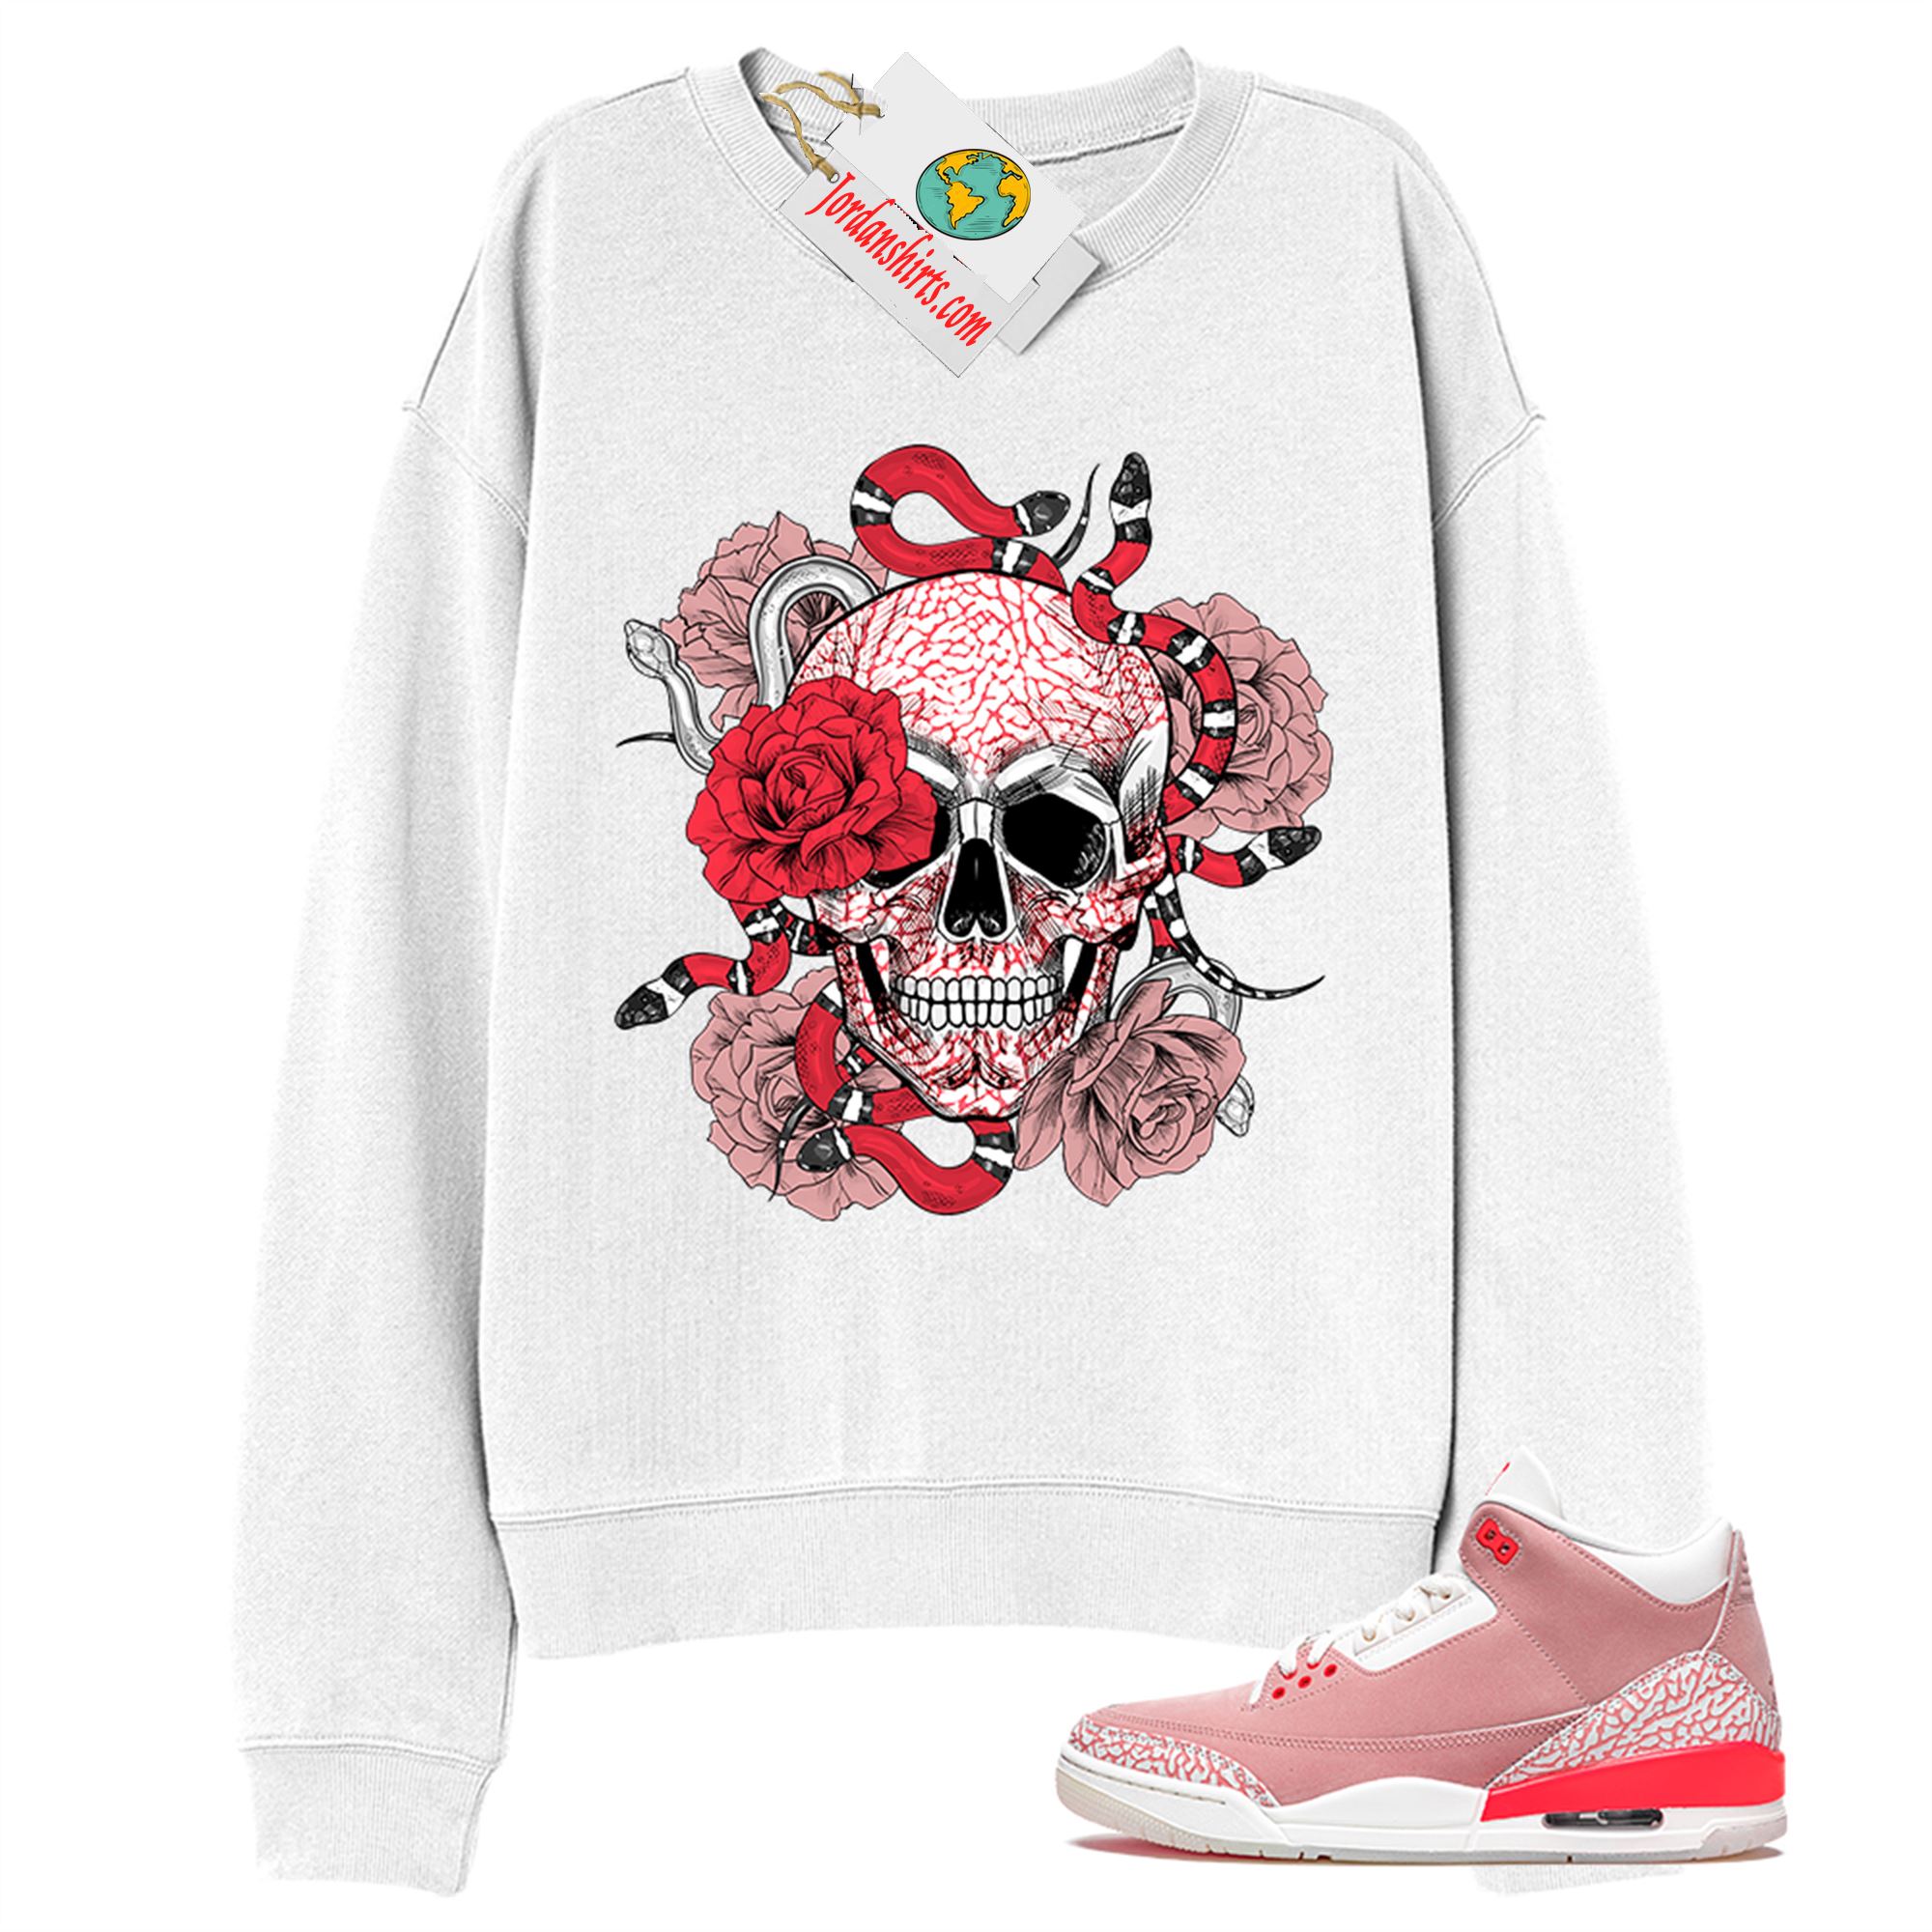 Jordan 3 Sweatshirt, Snake Skull Rose White Sweatshirt Air Jordan 3 Rust Pink 3s Plus Size Up To 5xl